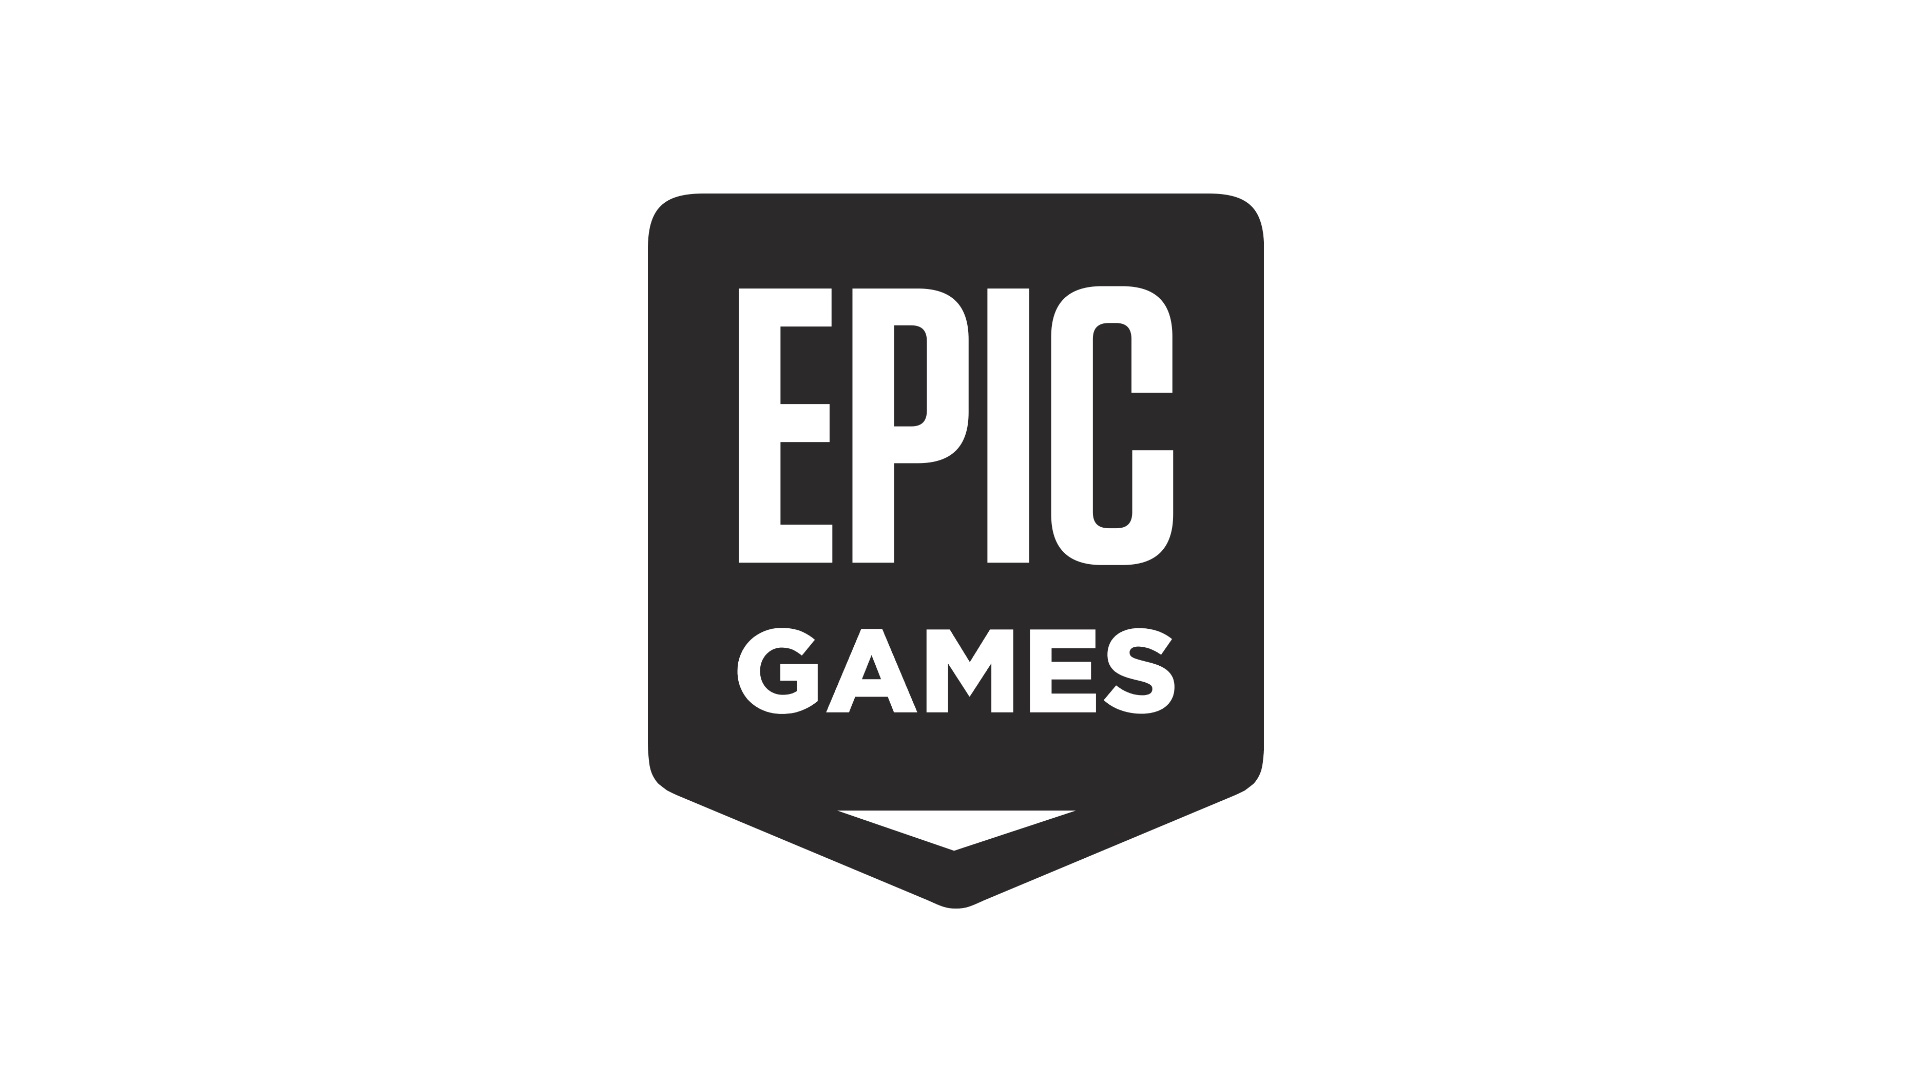 epic games logo